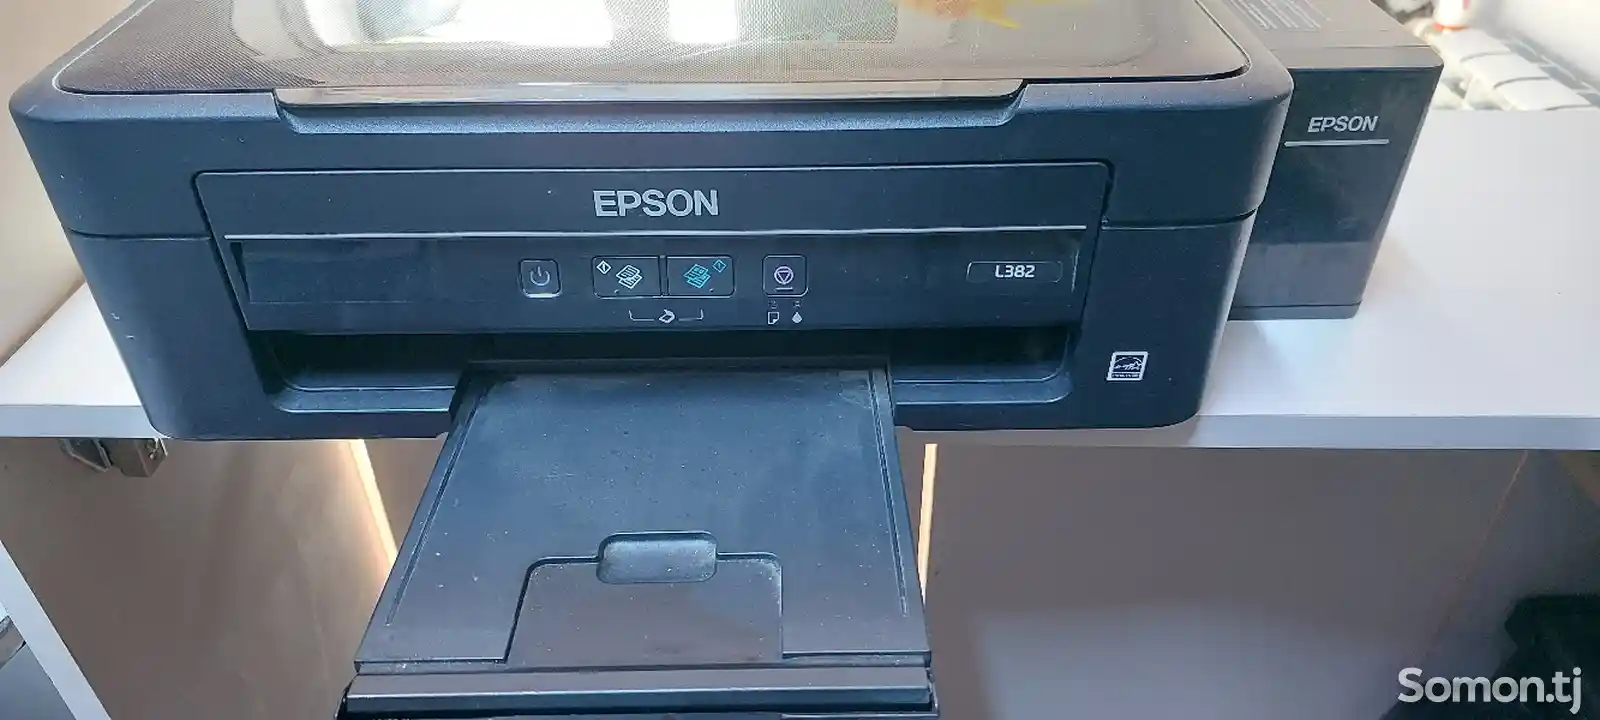 Принтер Epson L382 3/1-1